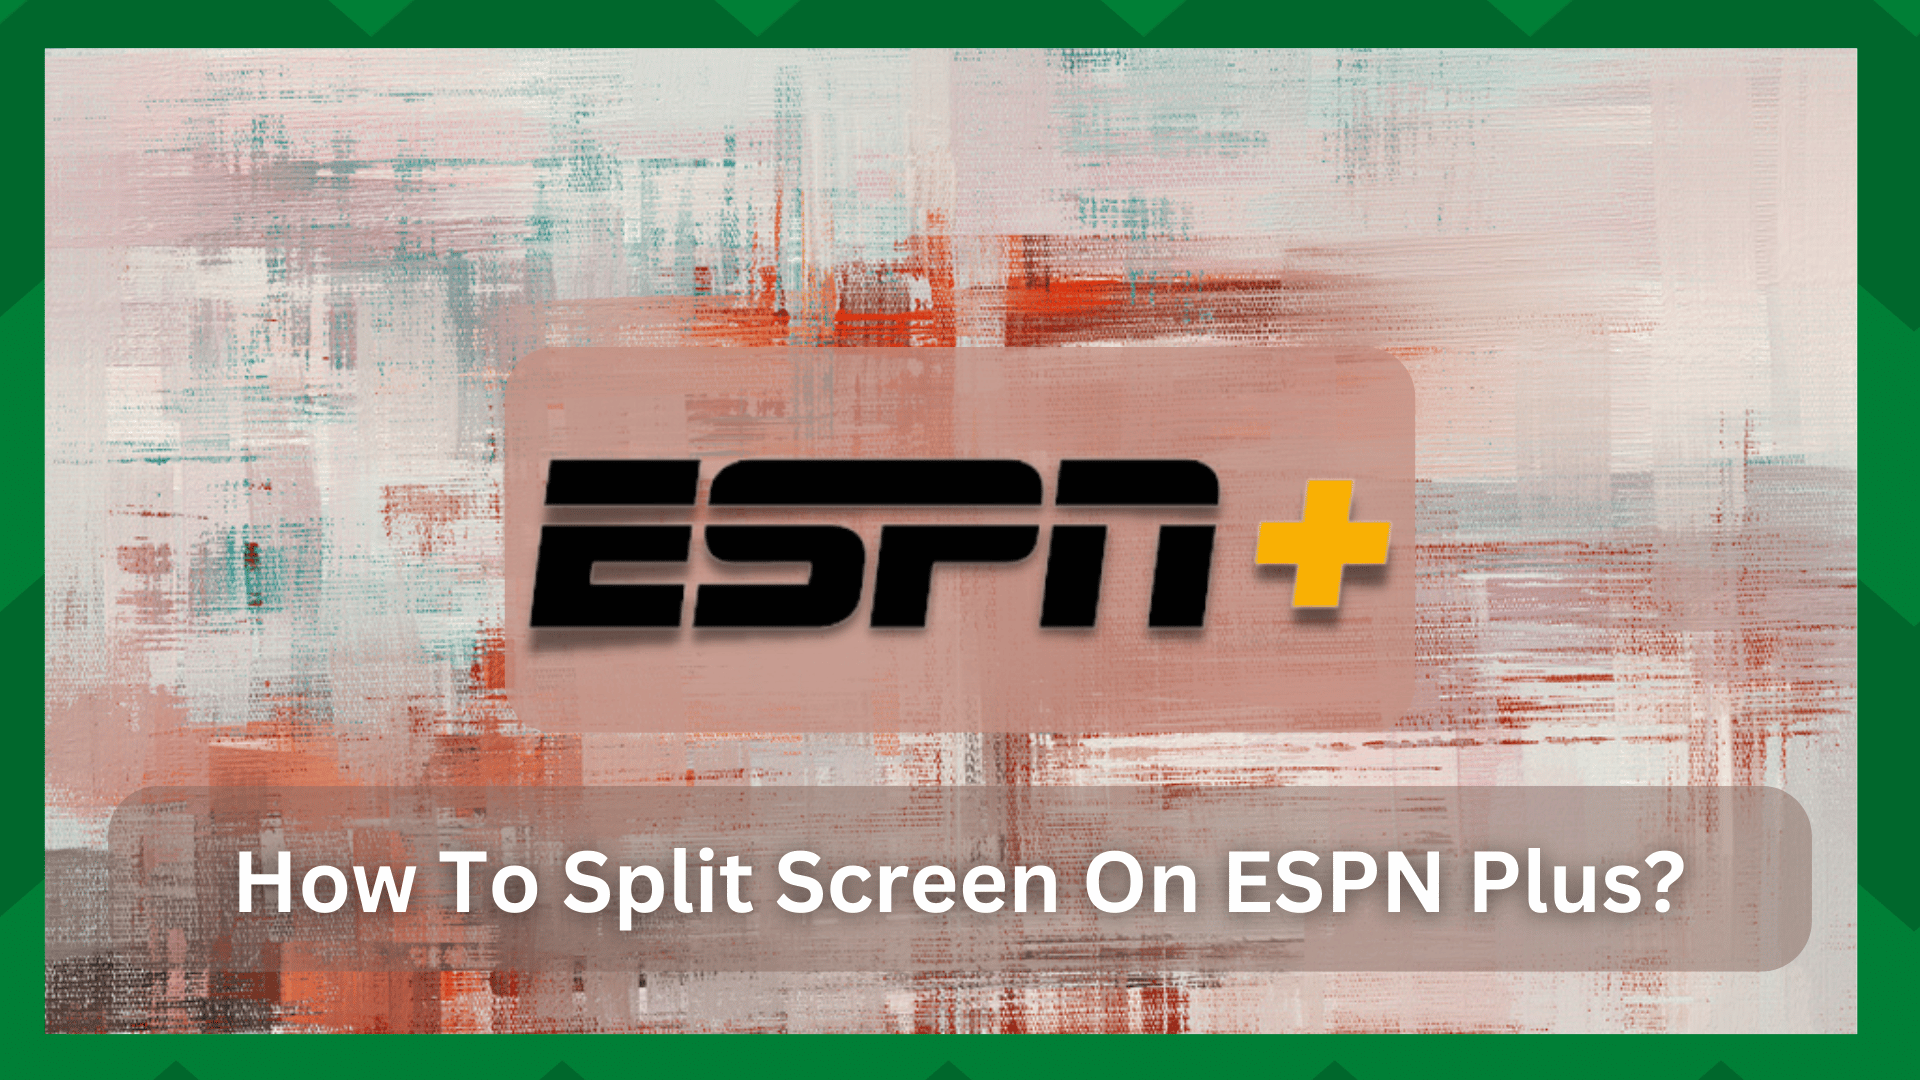 Hoe te splitsen scherm op ESPN Plus? (2 methoden)